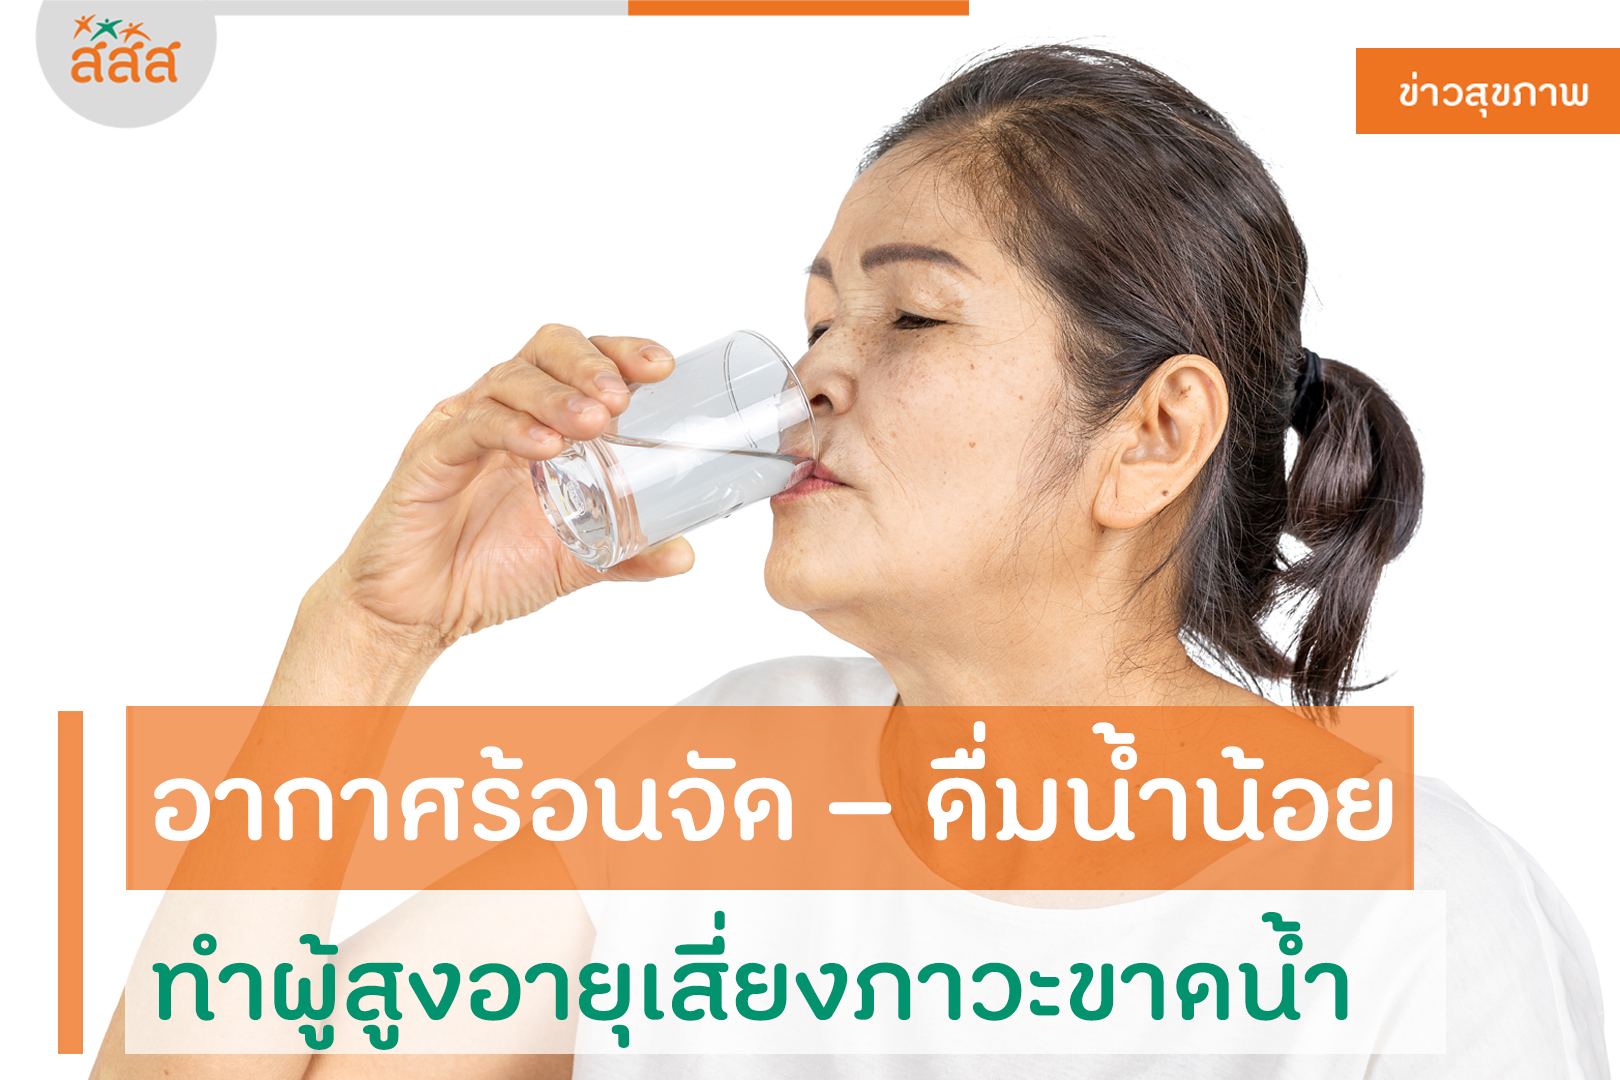 อากาศร้อนจัด – ดื่มน้ำน้อย ทำผู้สูงอายุเสี่ยงภาวะขาดน้ำ thaihealth